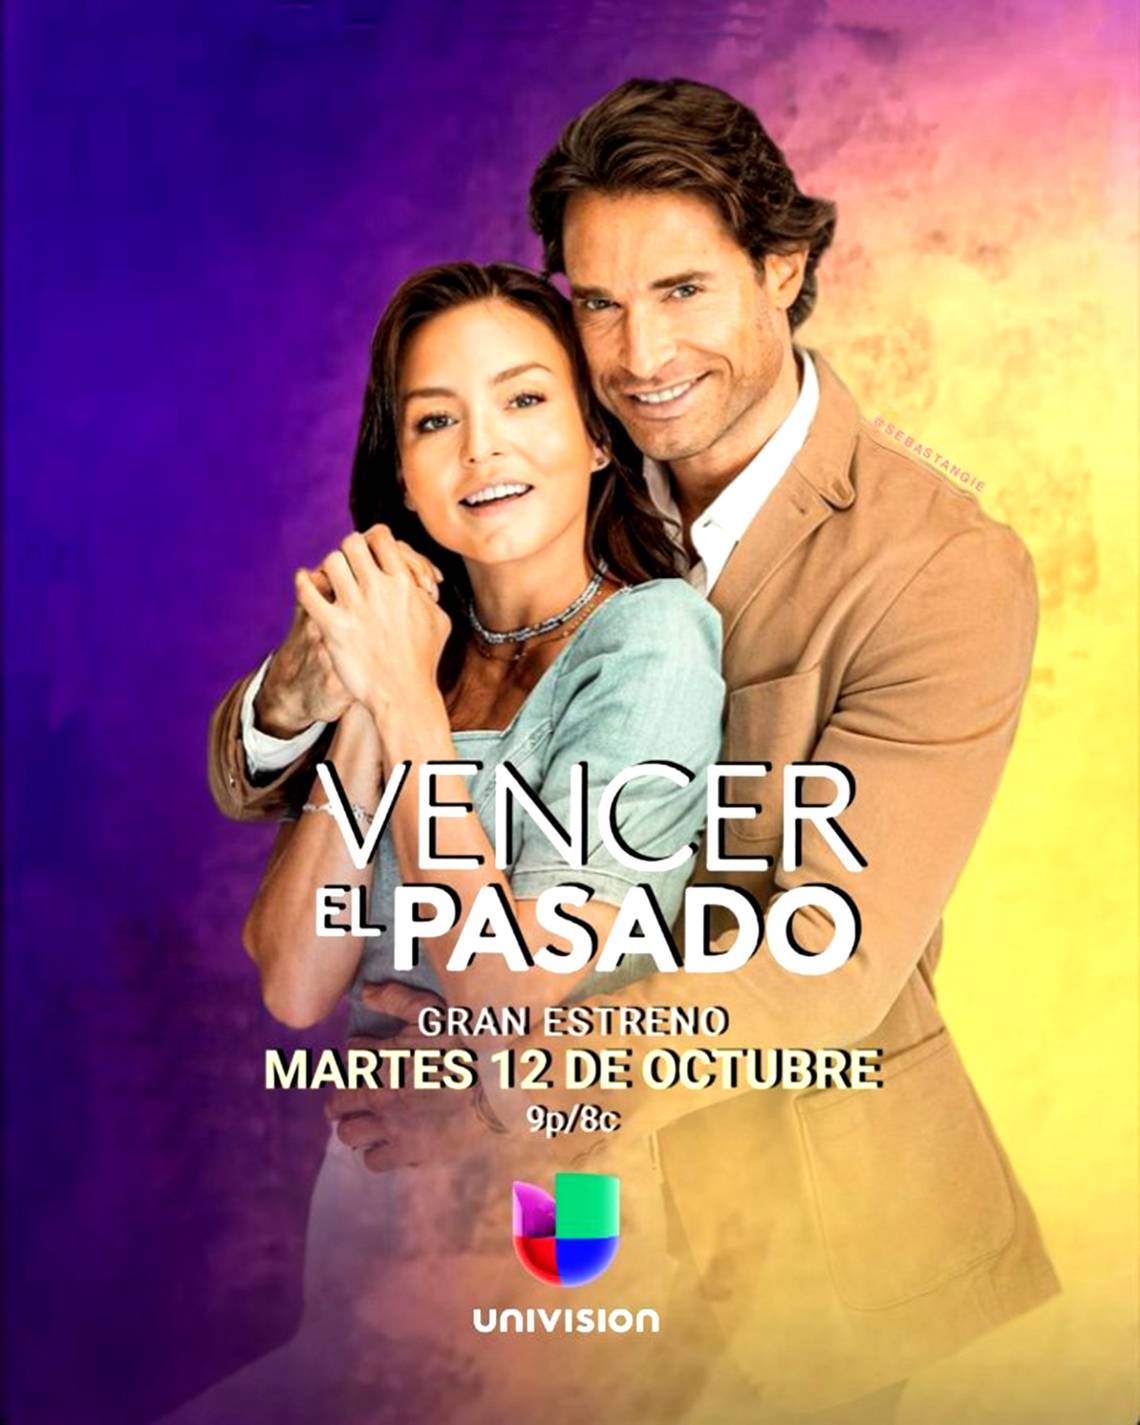 مسلسل Vencer El Pasado (تغلب على الماضي ) مترجم جميع الحلقات